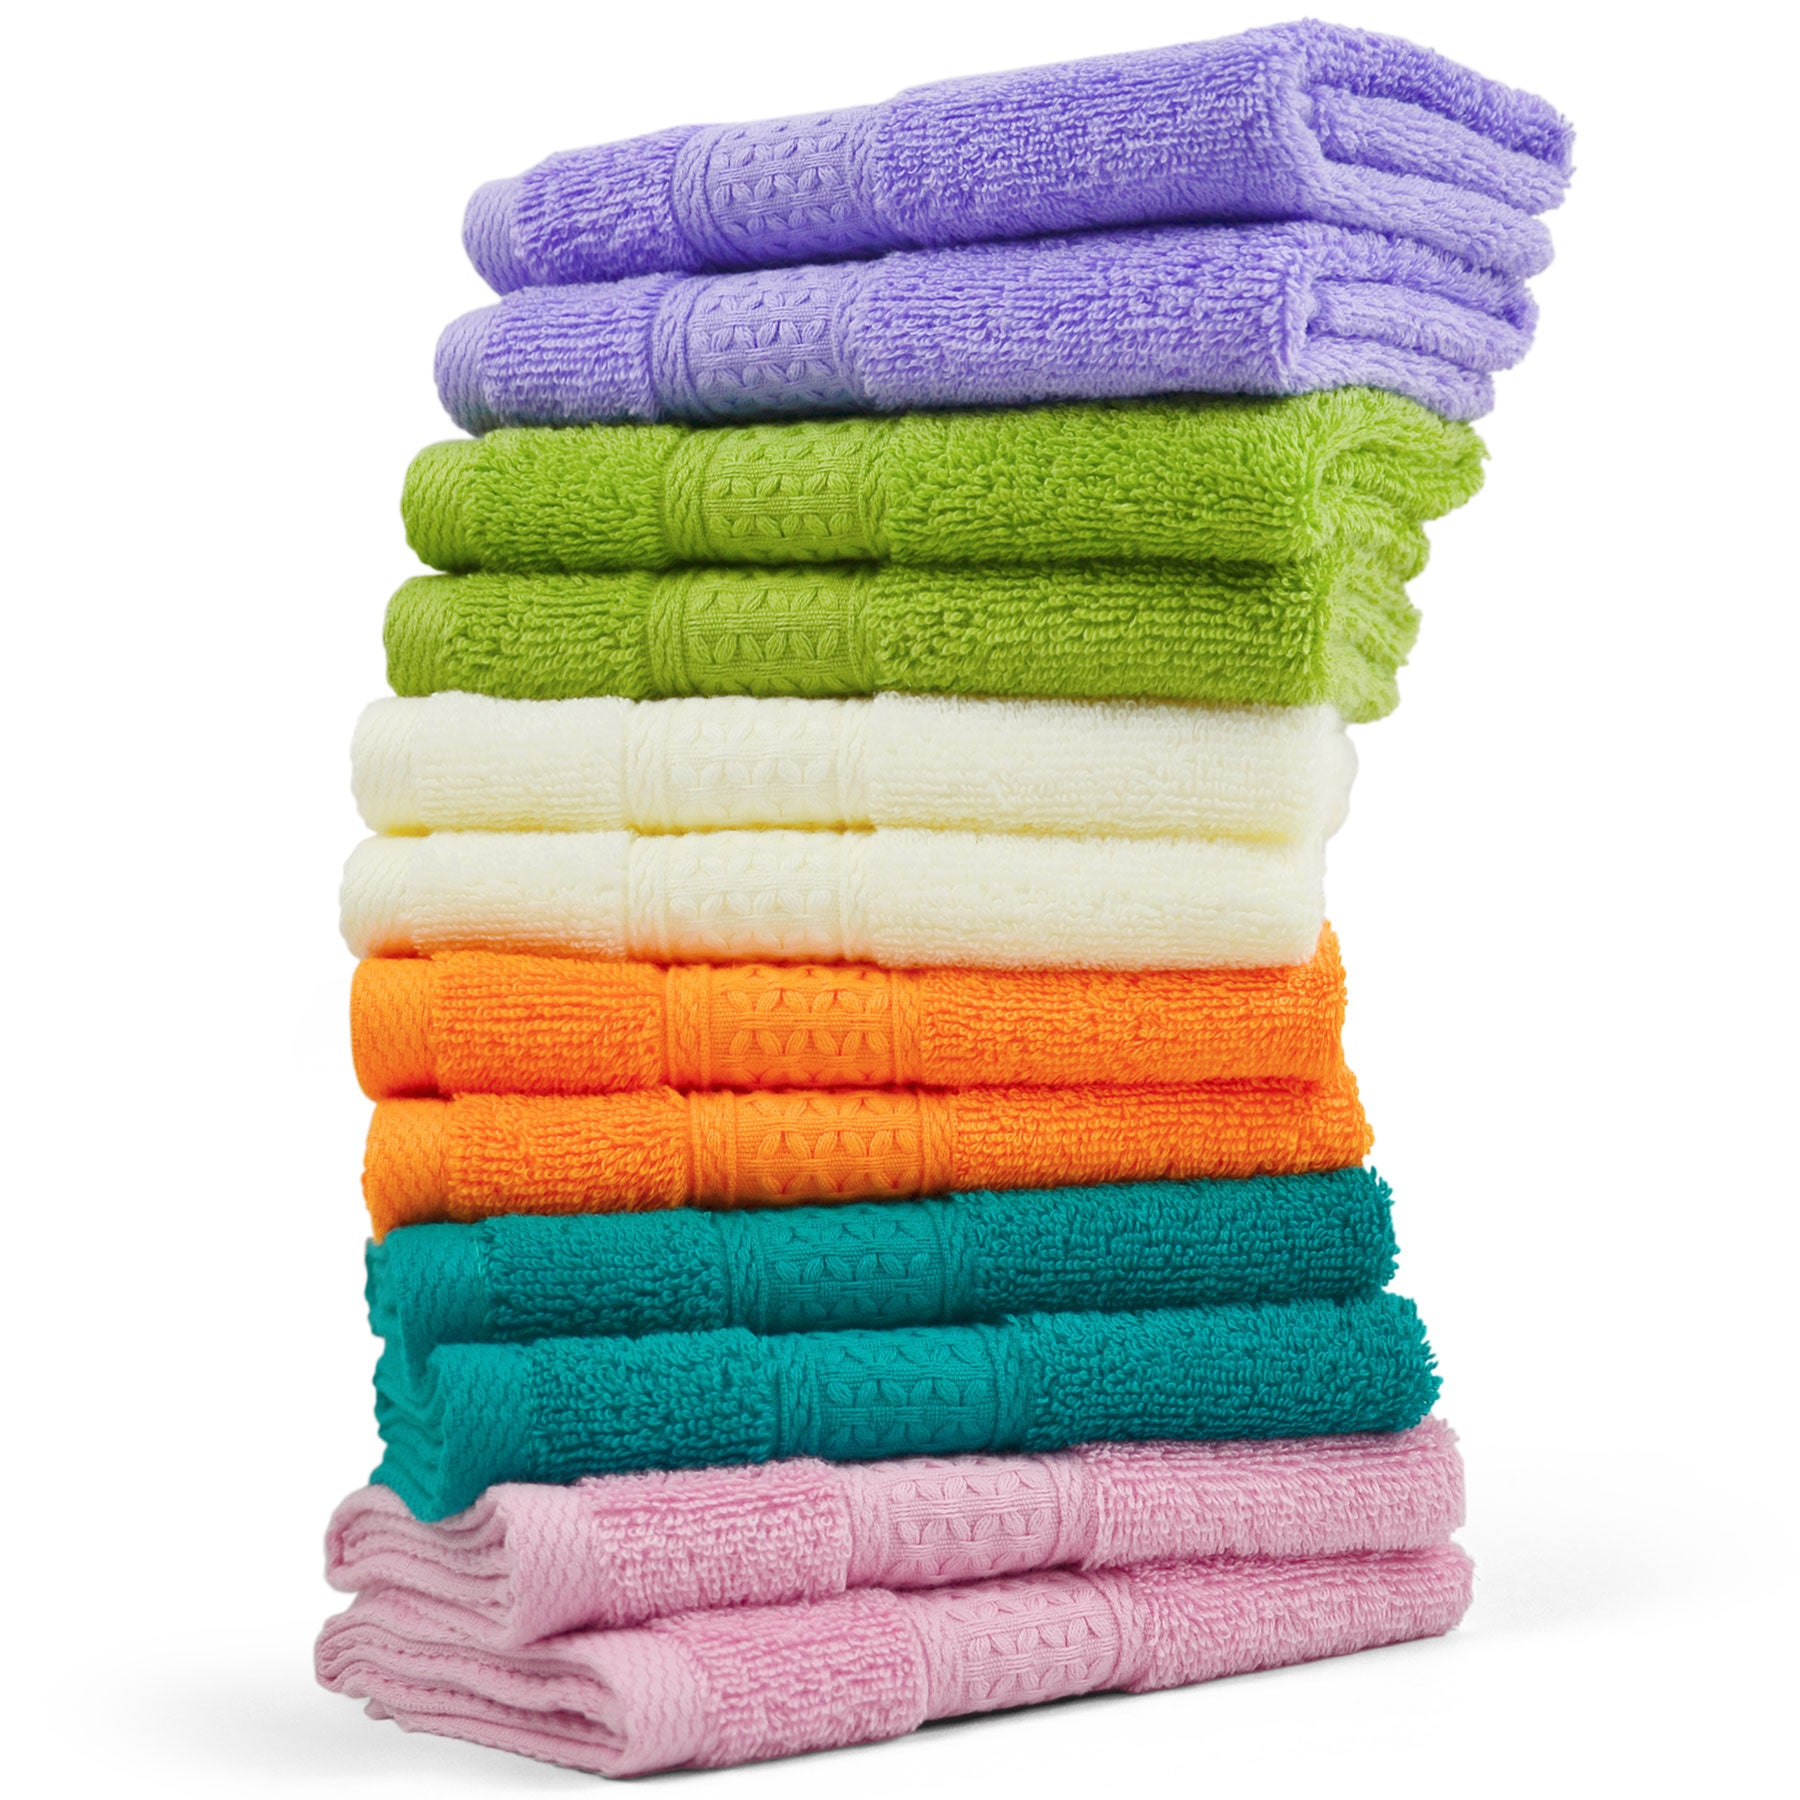 Cleanbear Washcloths Orange Face Cloths Set of 6 Bathroom Washcloth Set